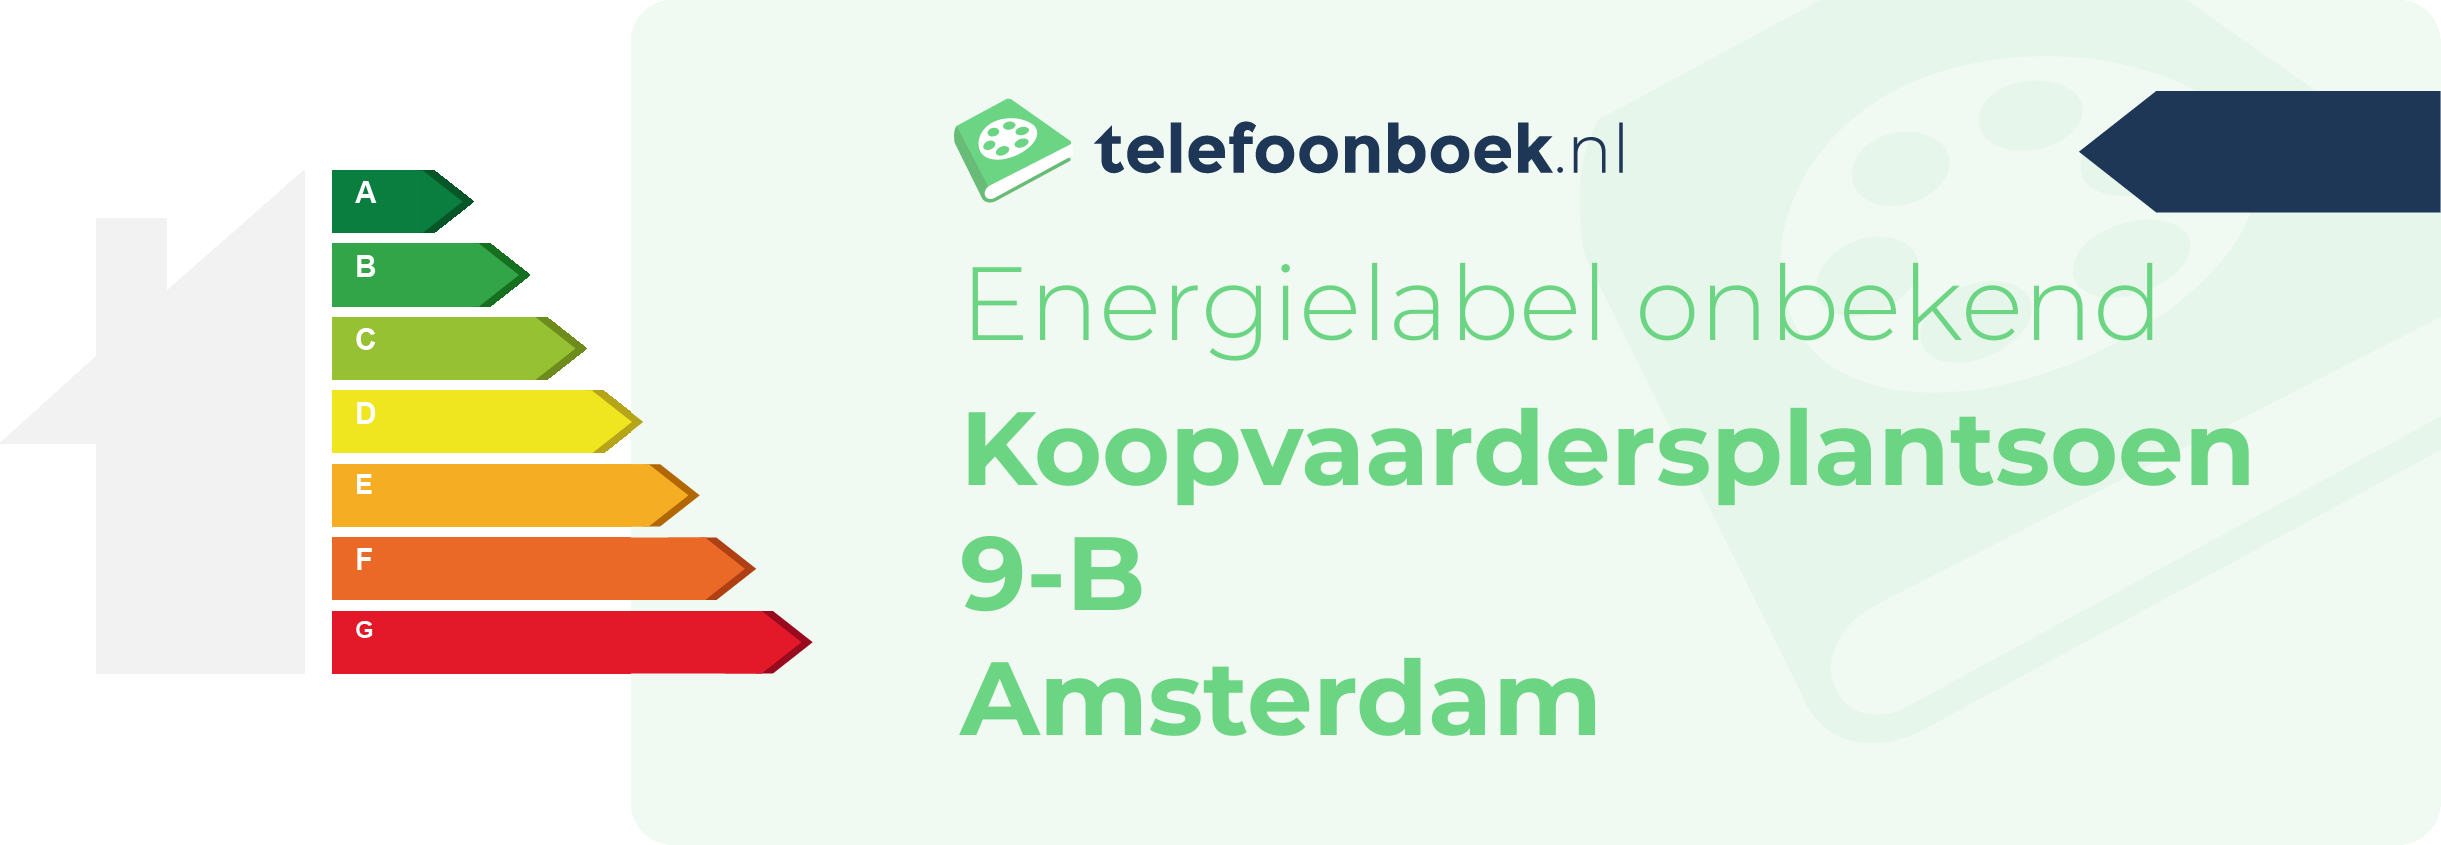 Energielabel Koopvaardersplantsoen 9-B Amsterdam